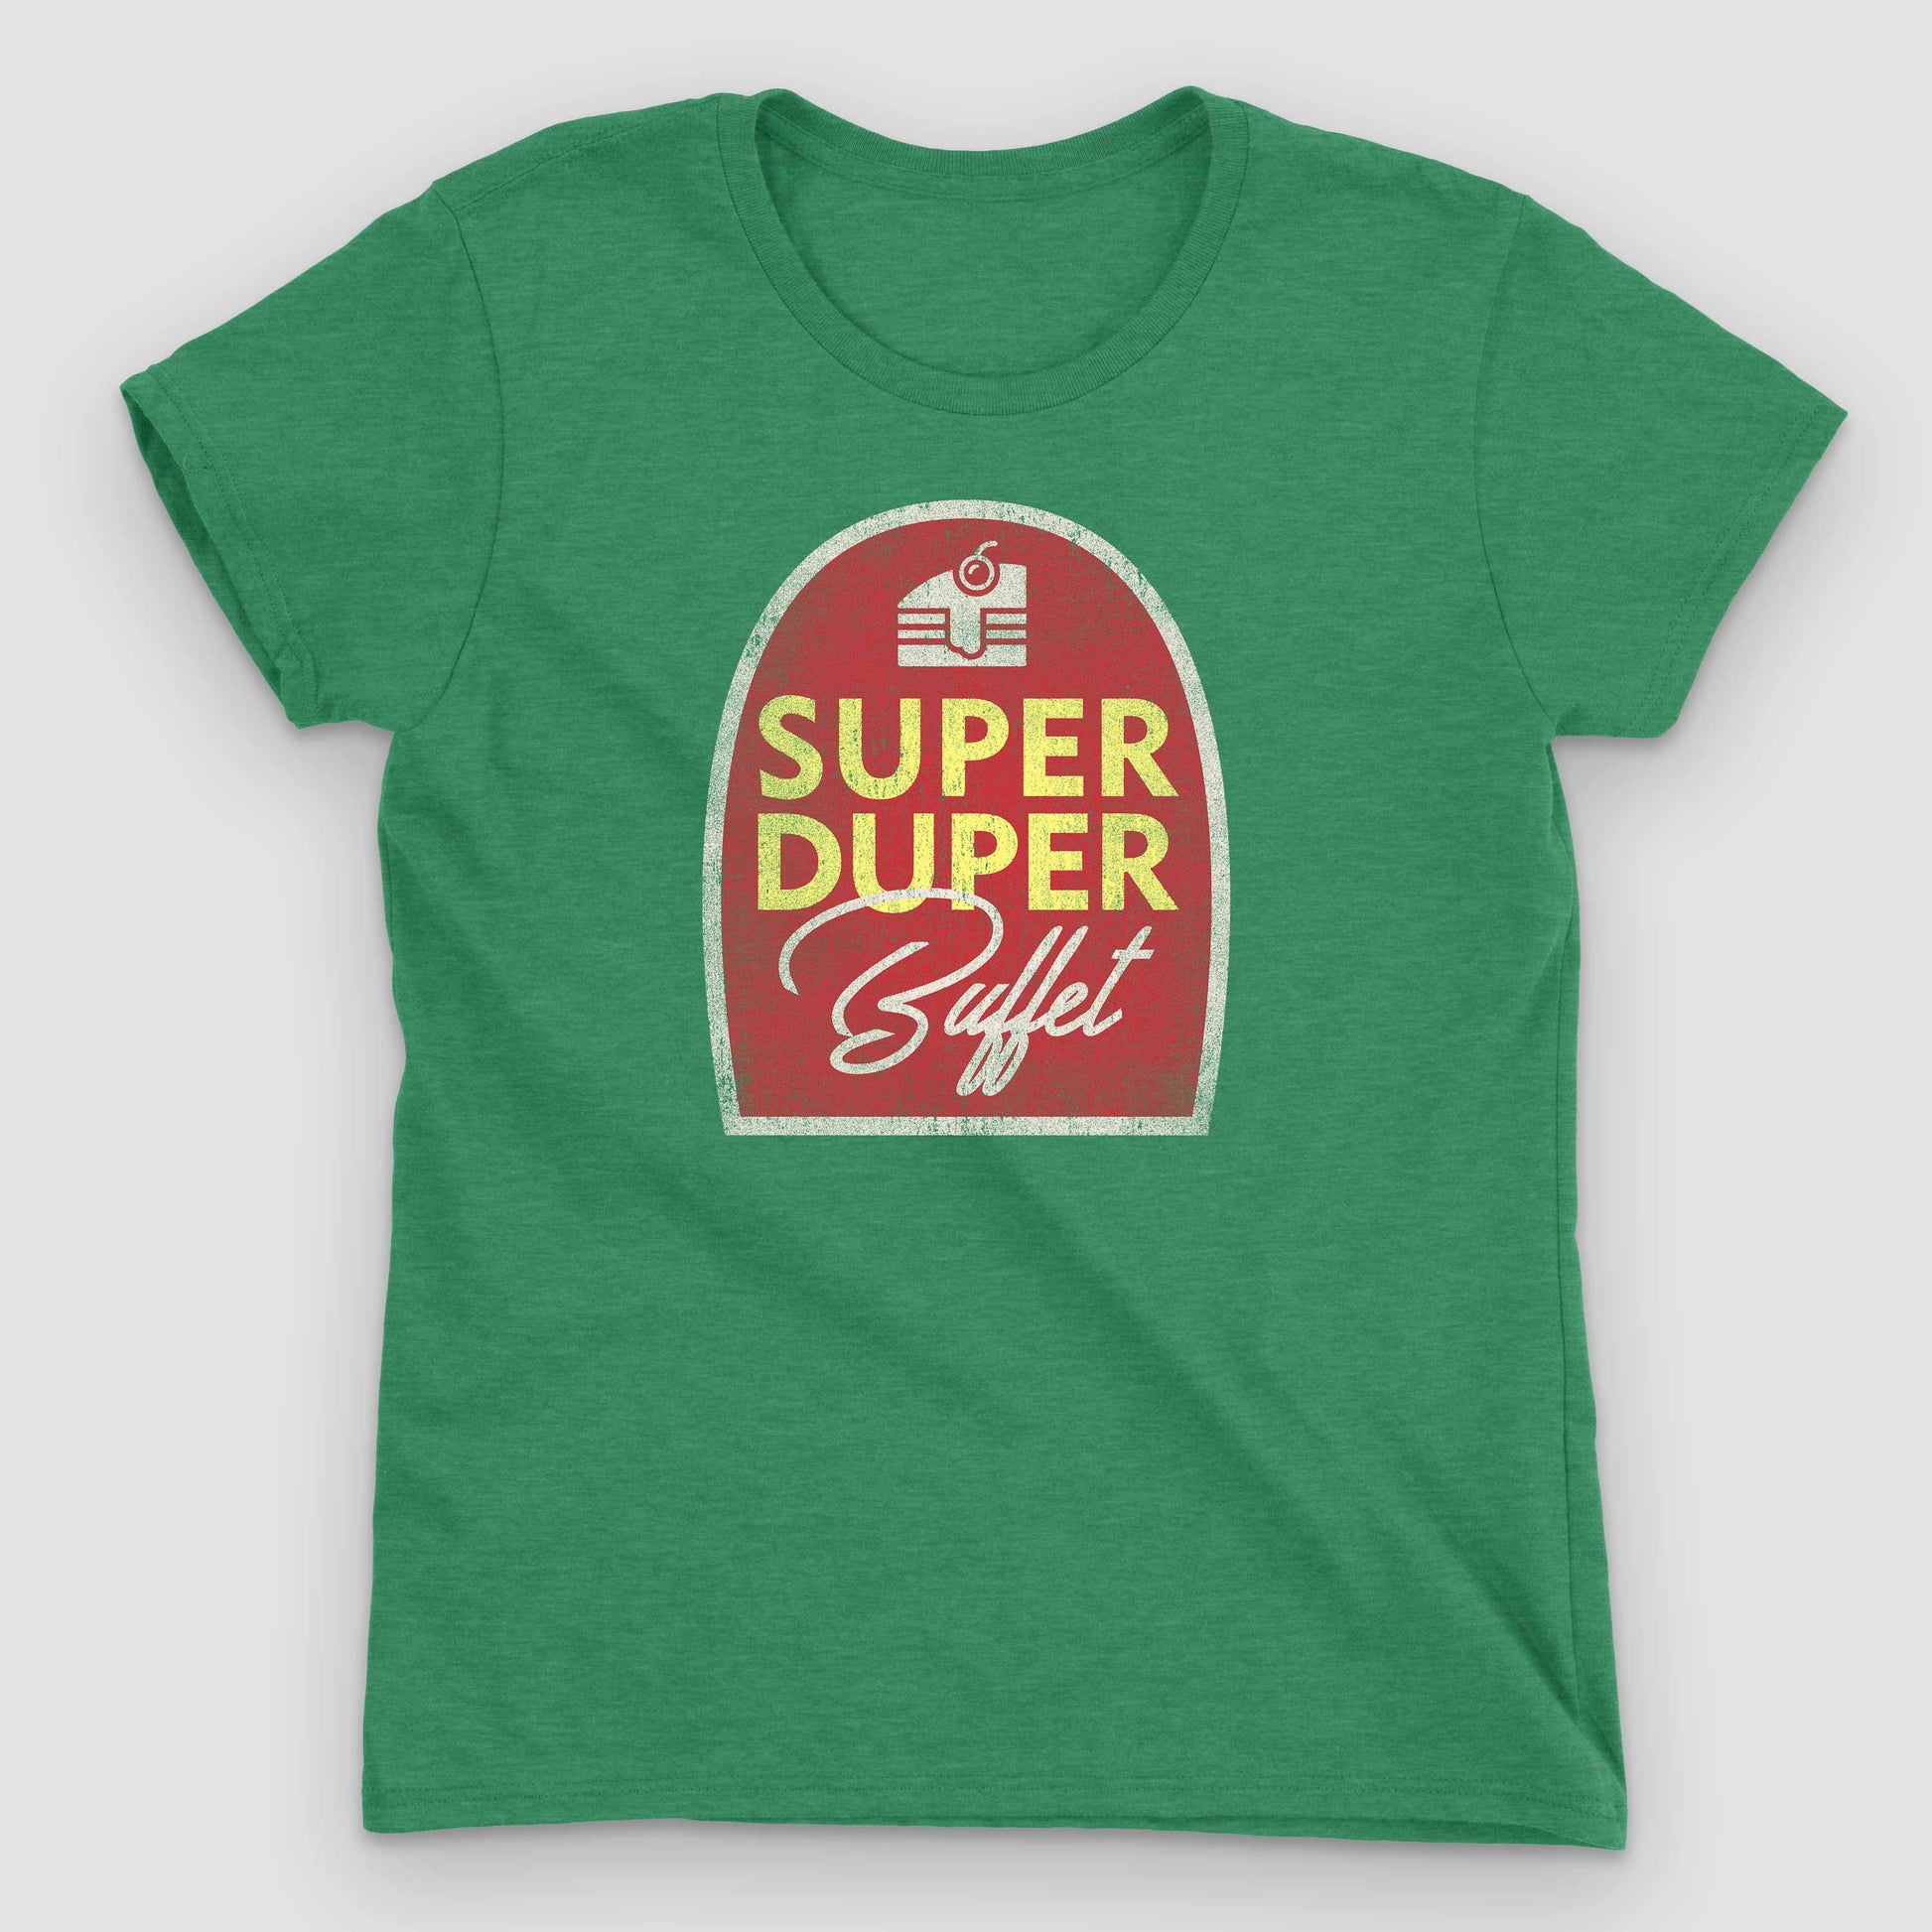 Heather Green Super Duper Buffet Women's T-Shirt by Snaxtime